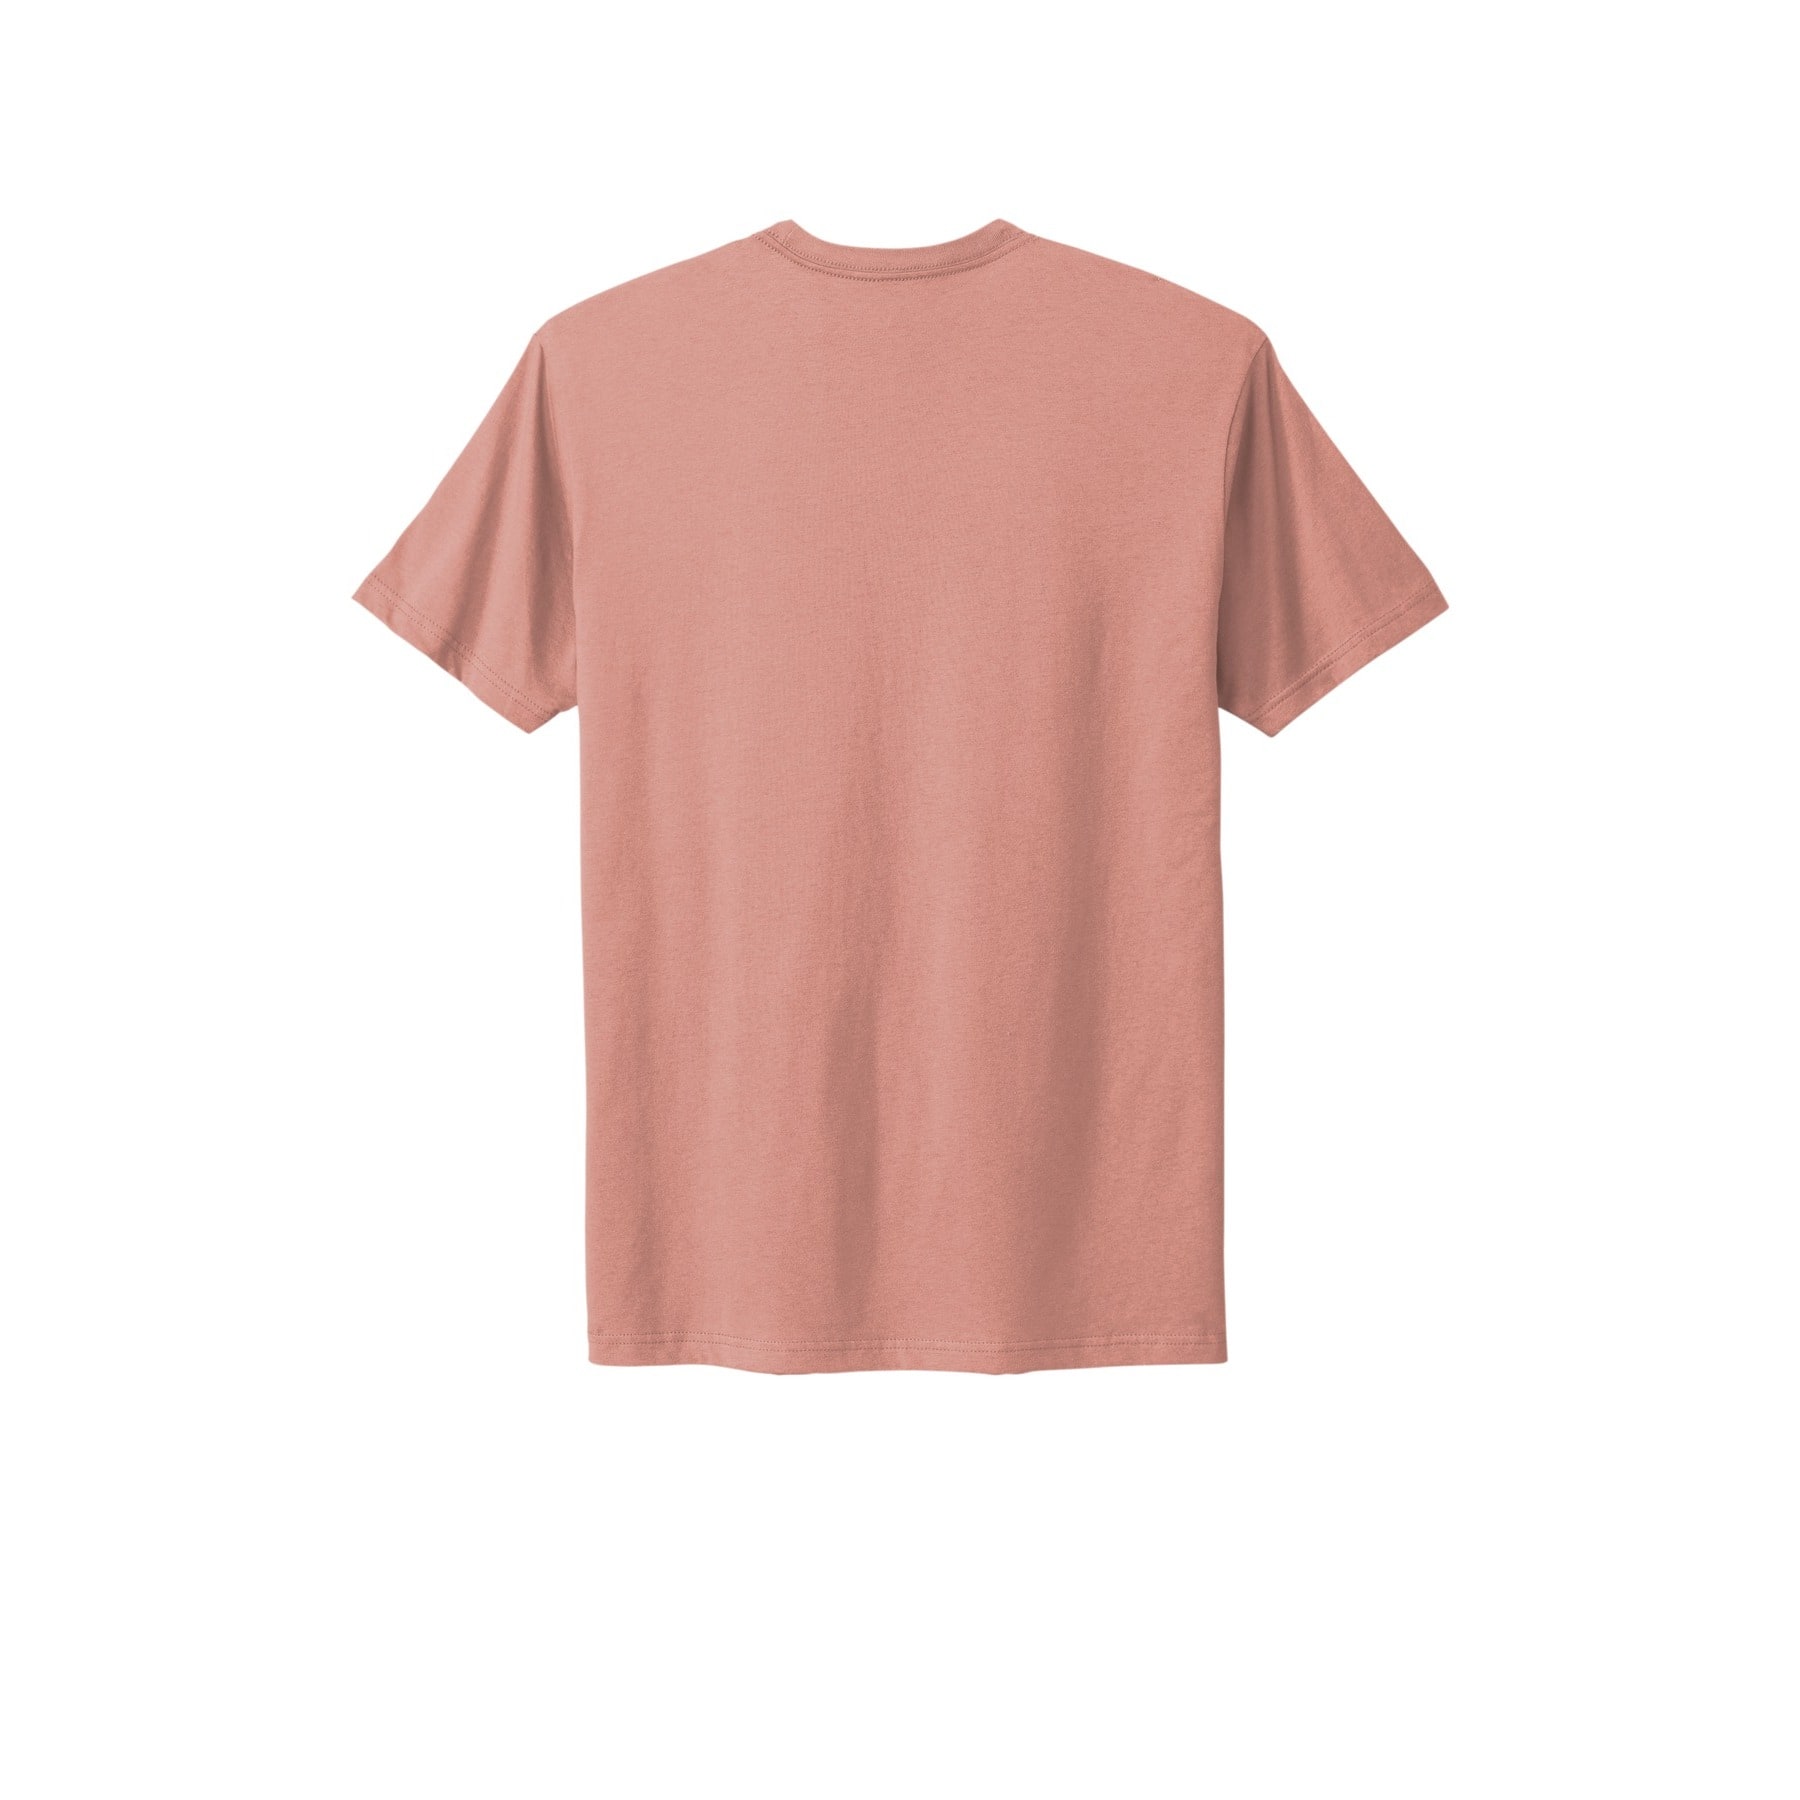 Next Level Unisex Adult Cotton T-Shirt